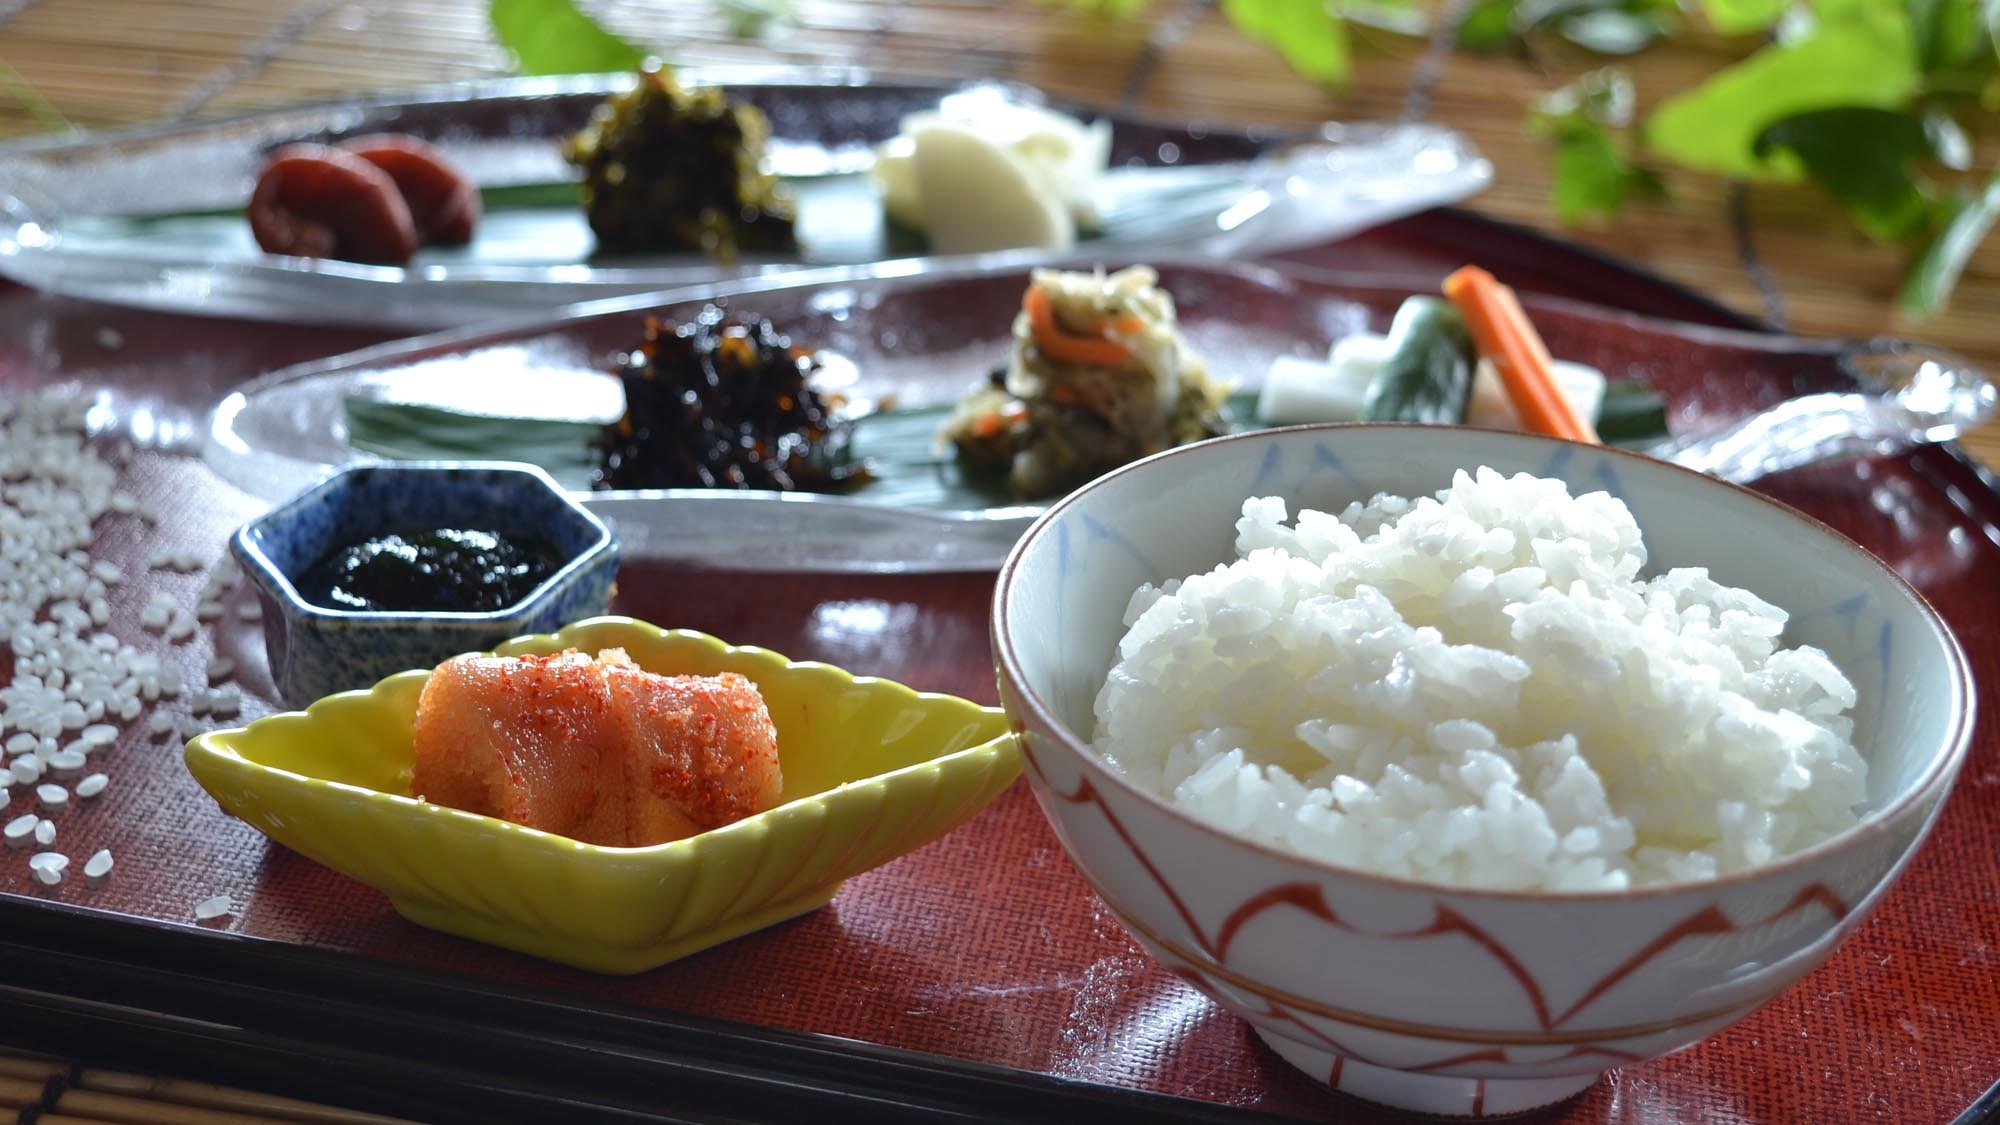 ◆ 白米饭（图片）：刚煮好的白米饭和米饭的伴侣。